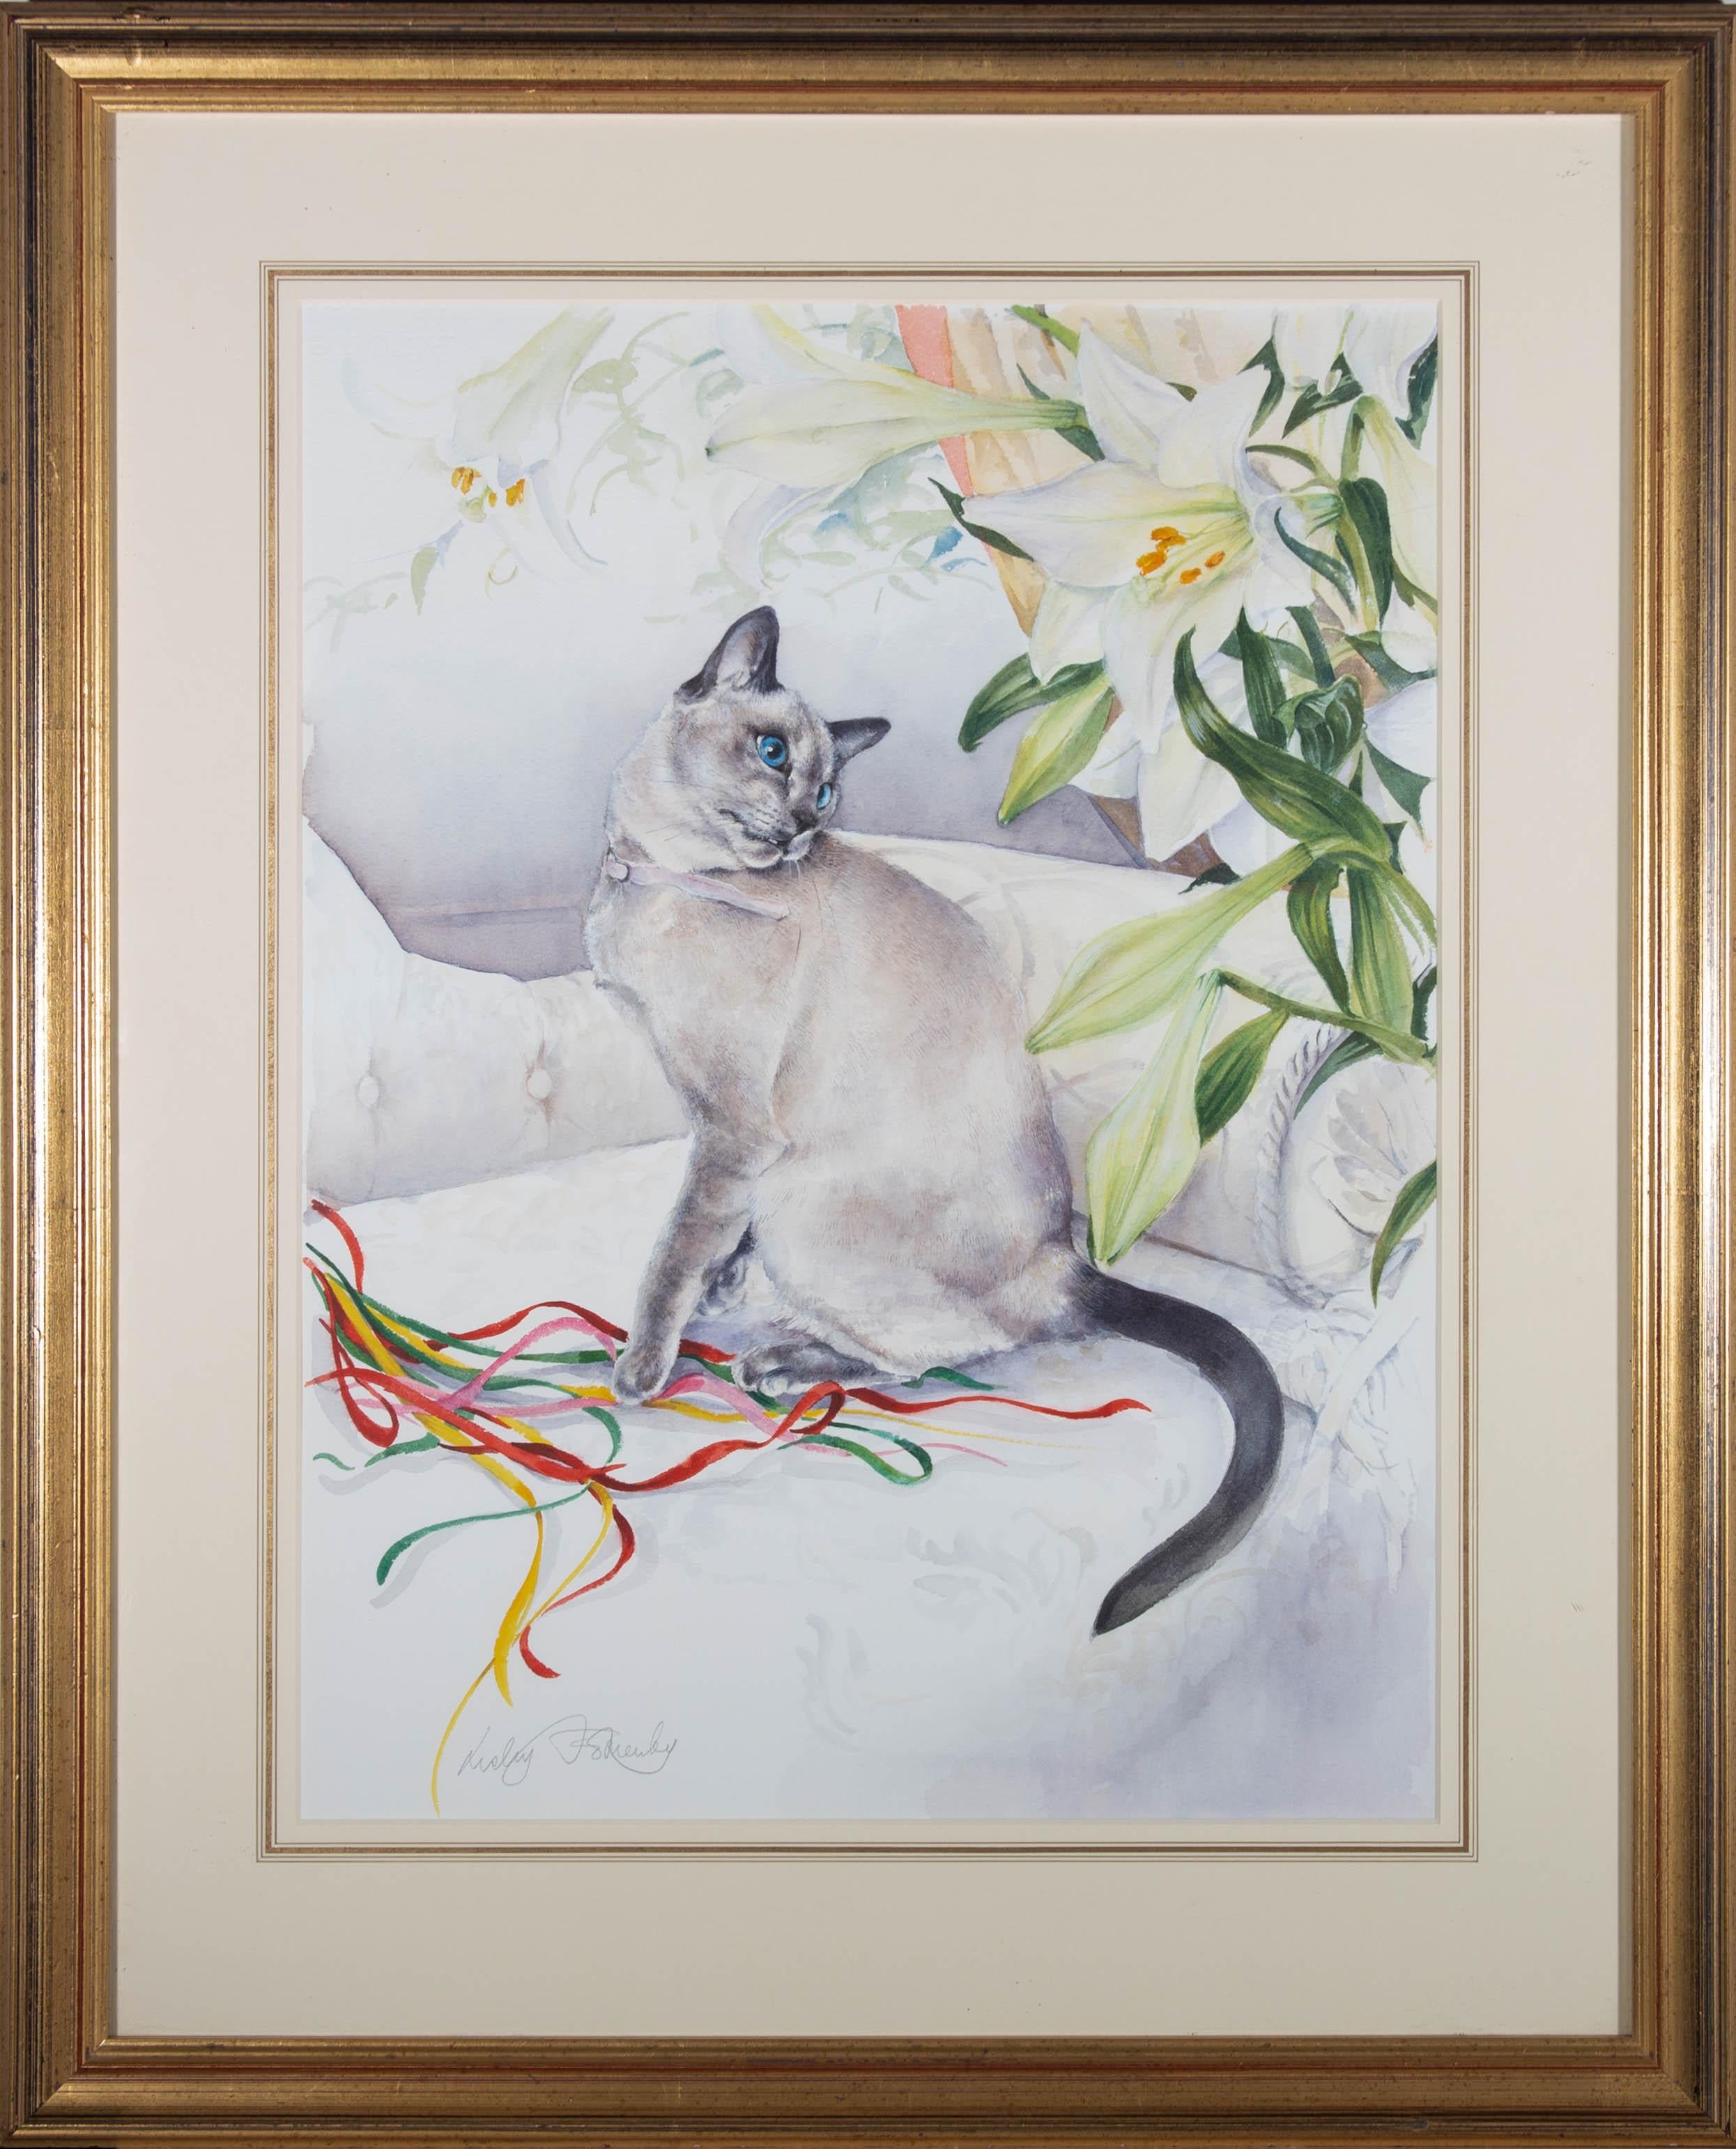 Une jolie aquarelle avec des détails à la gouache de l'artiste britannique Lesley Fotherby, représentant une scène d'intérieur avec un chat nommé "Fifi" jouant sur un canapé blanc. Signé dans le coin inférieur gauche. Bien présenté dans une monture